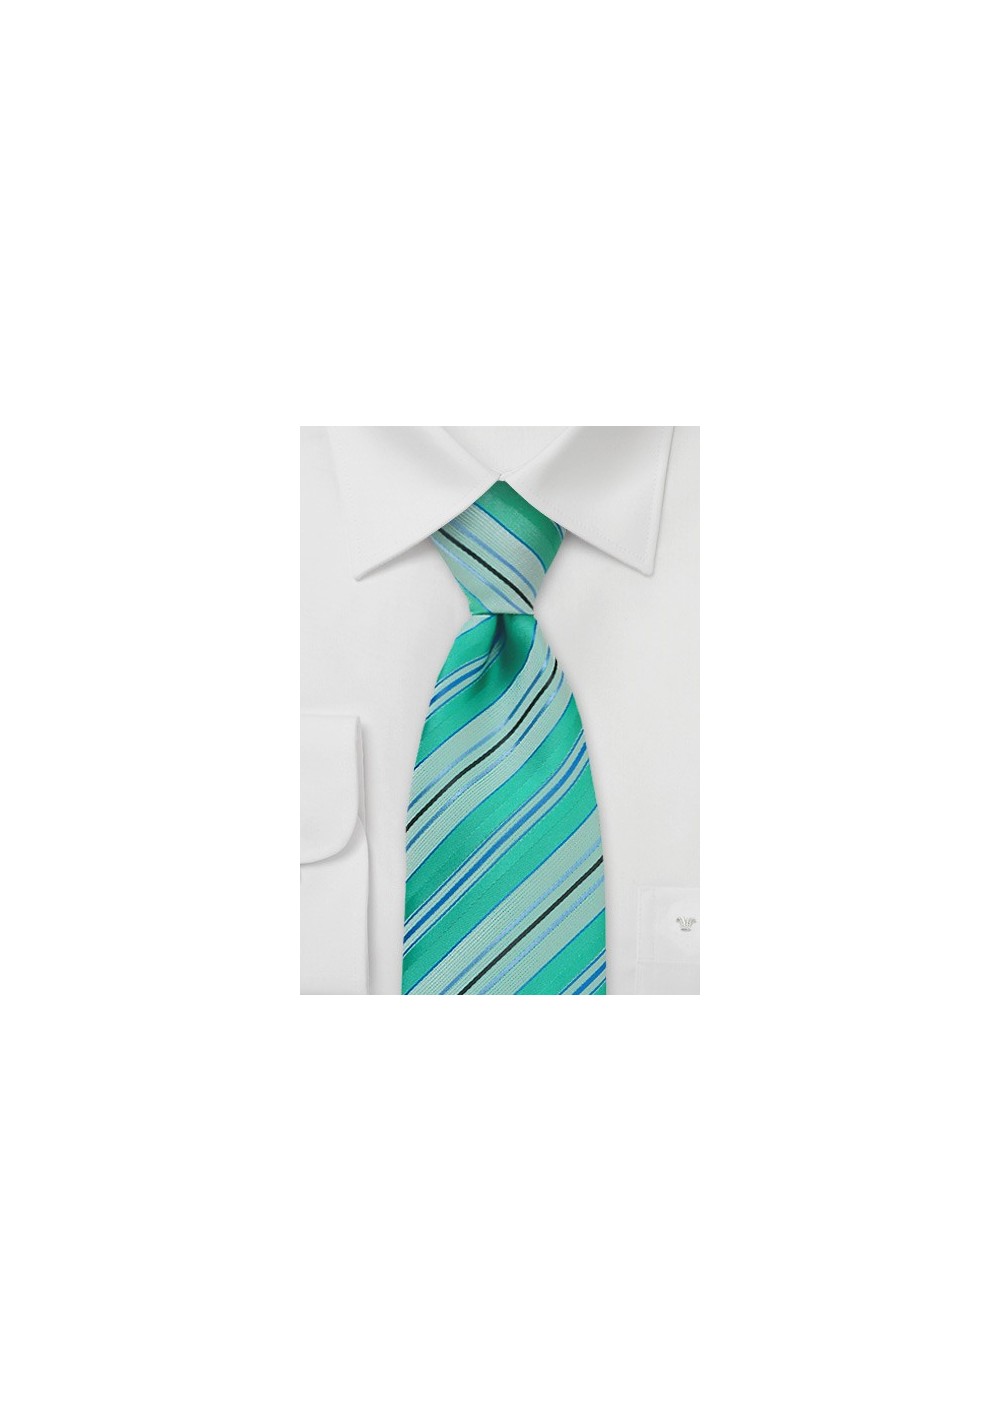 Mint Green Striped Tie in XL Length